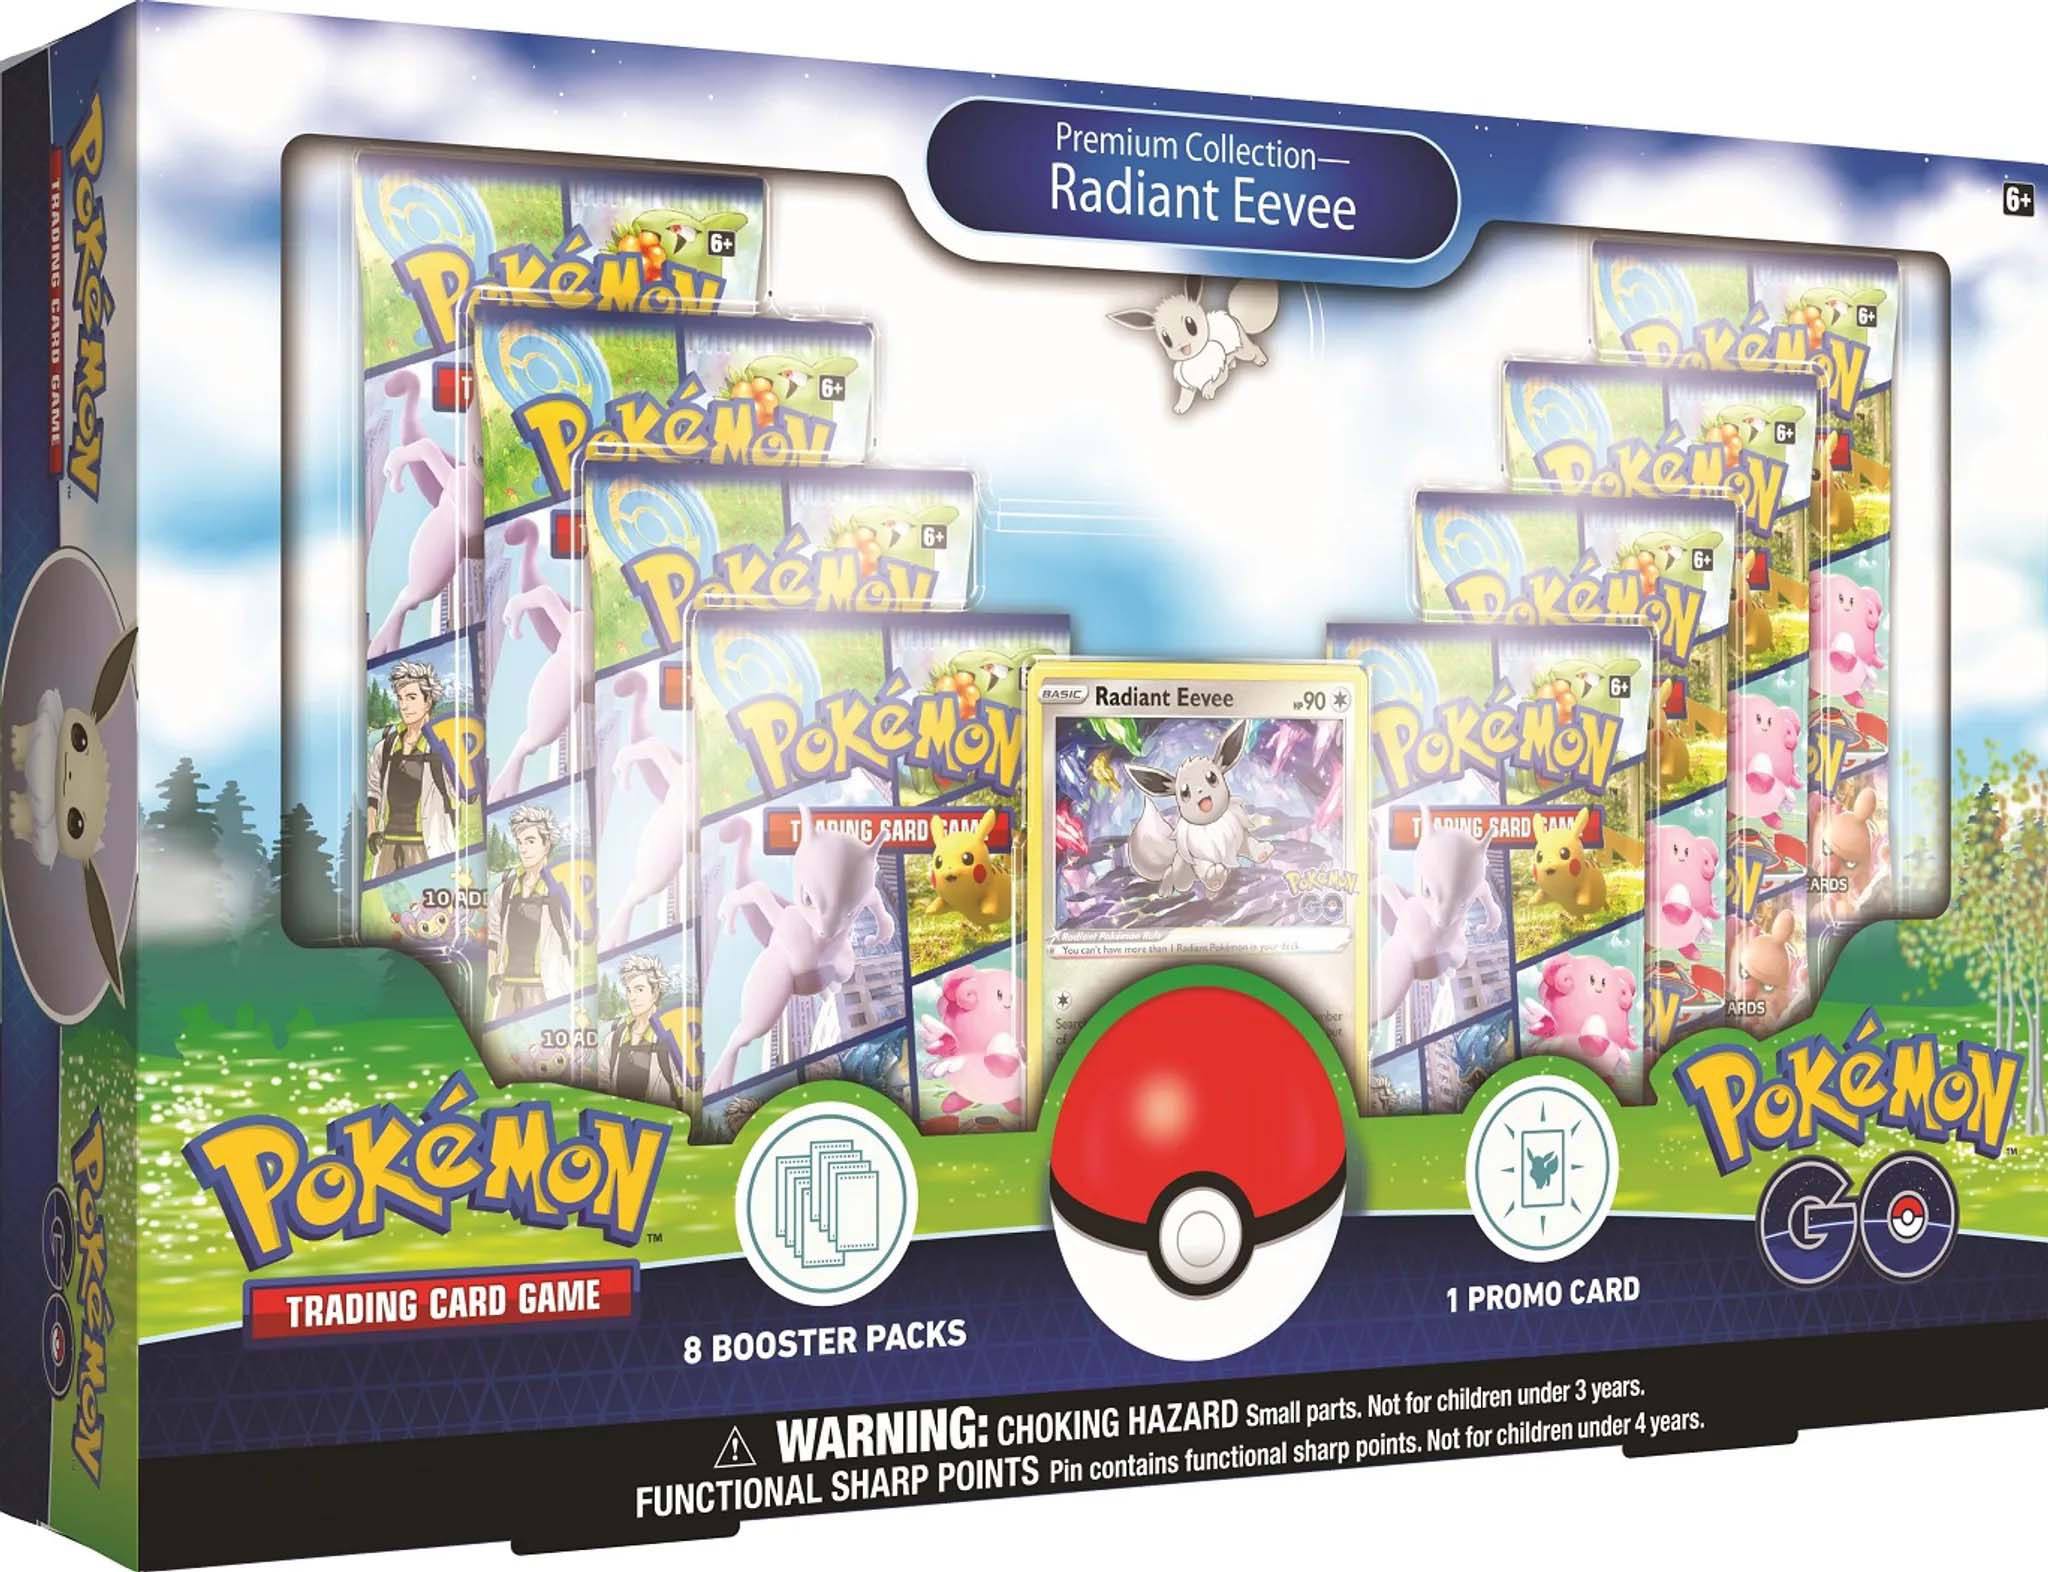 Pokémon GO Premium Collection Radiant Eevee